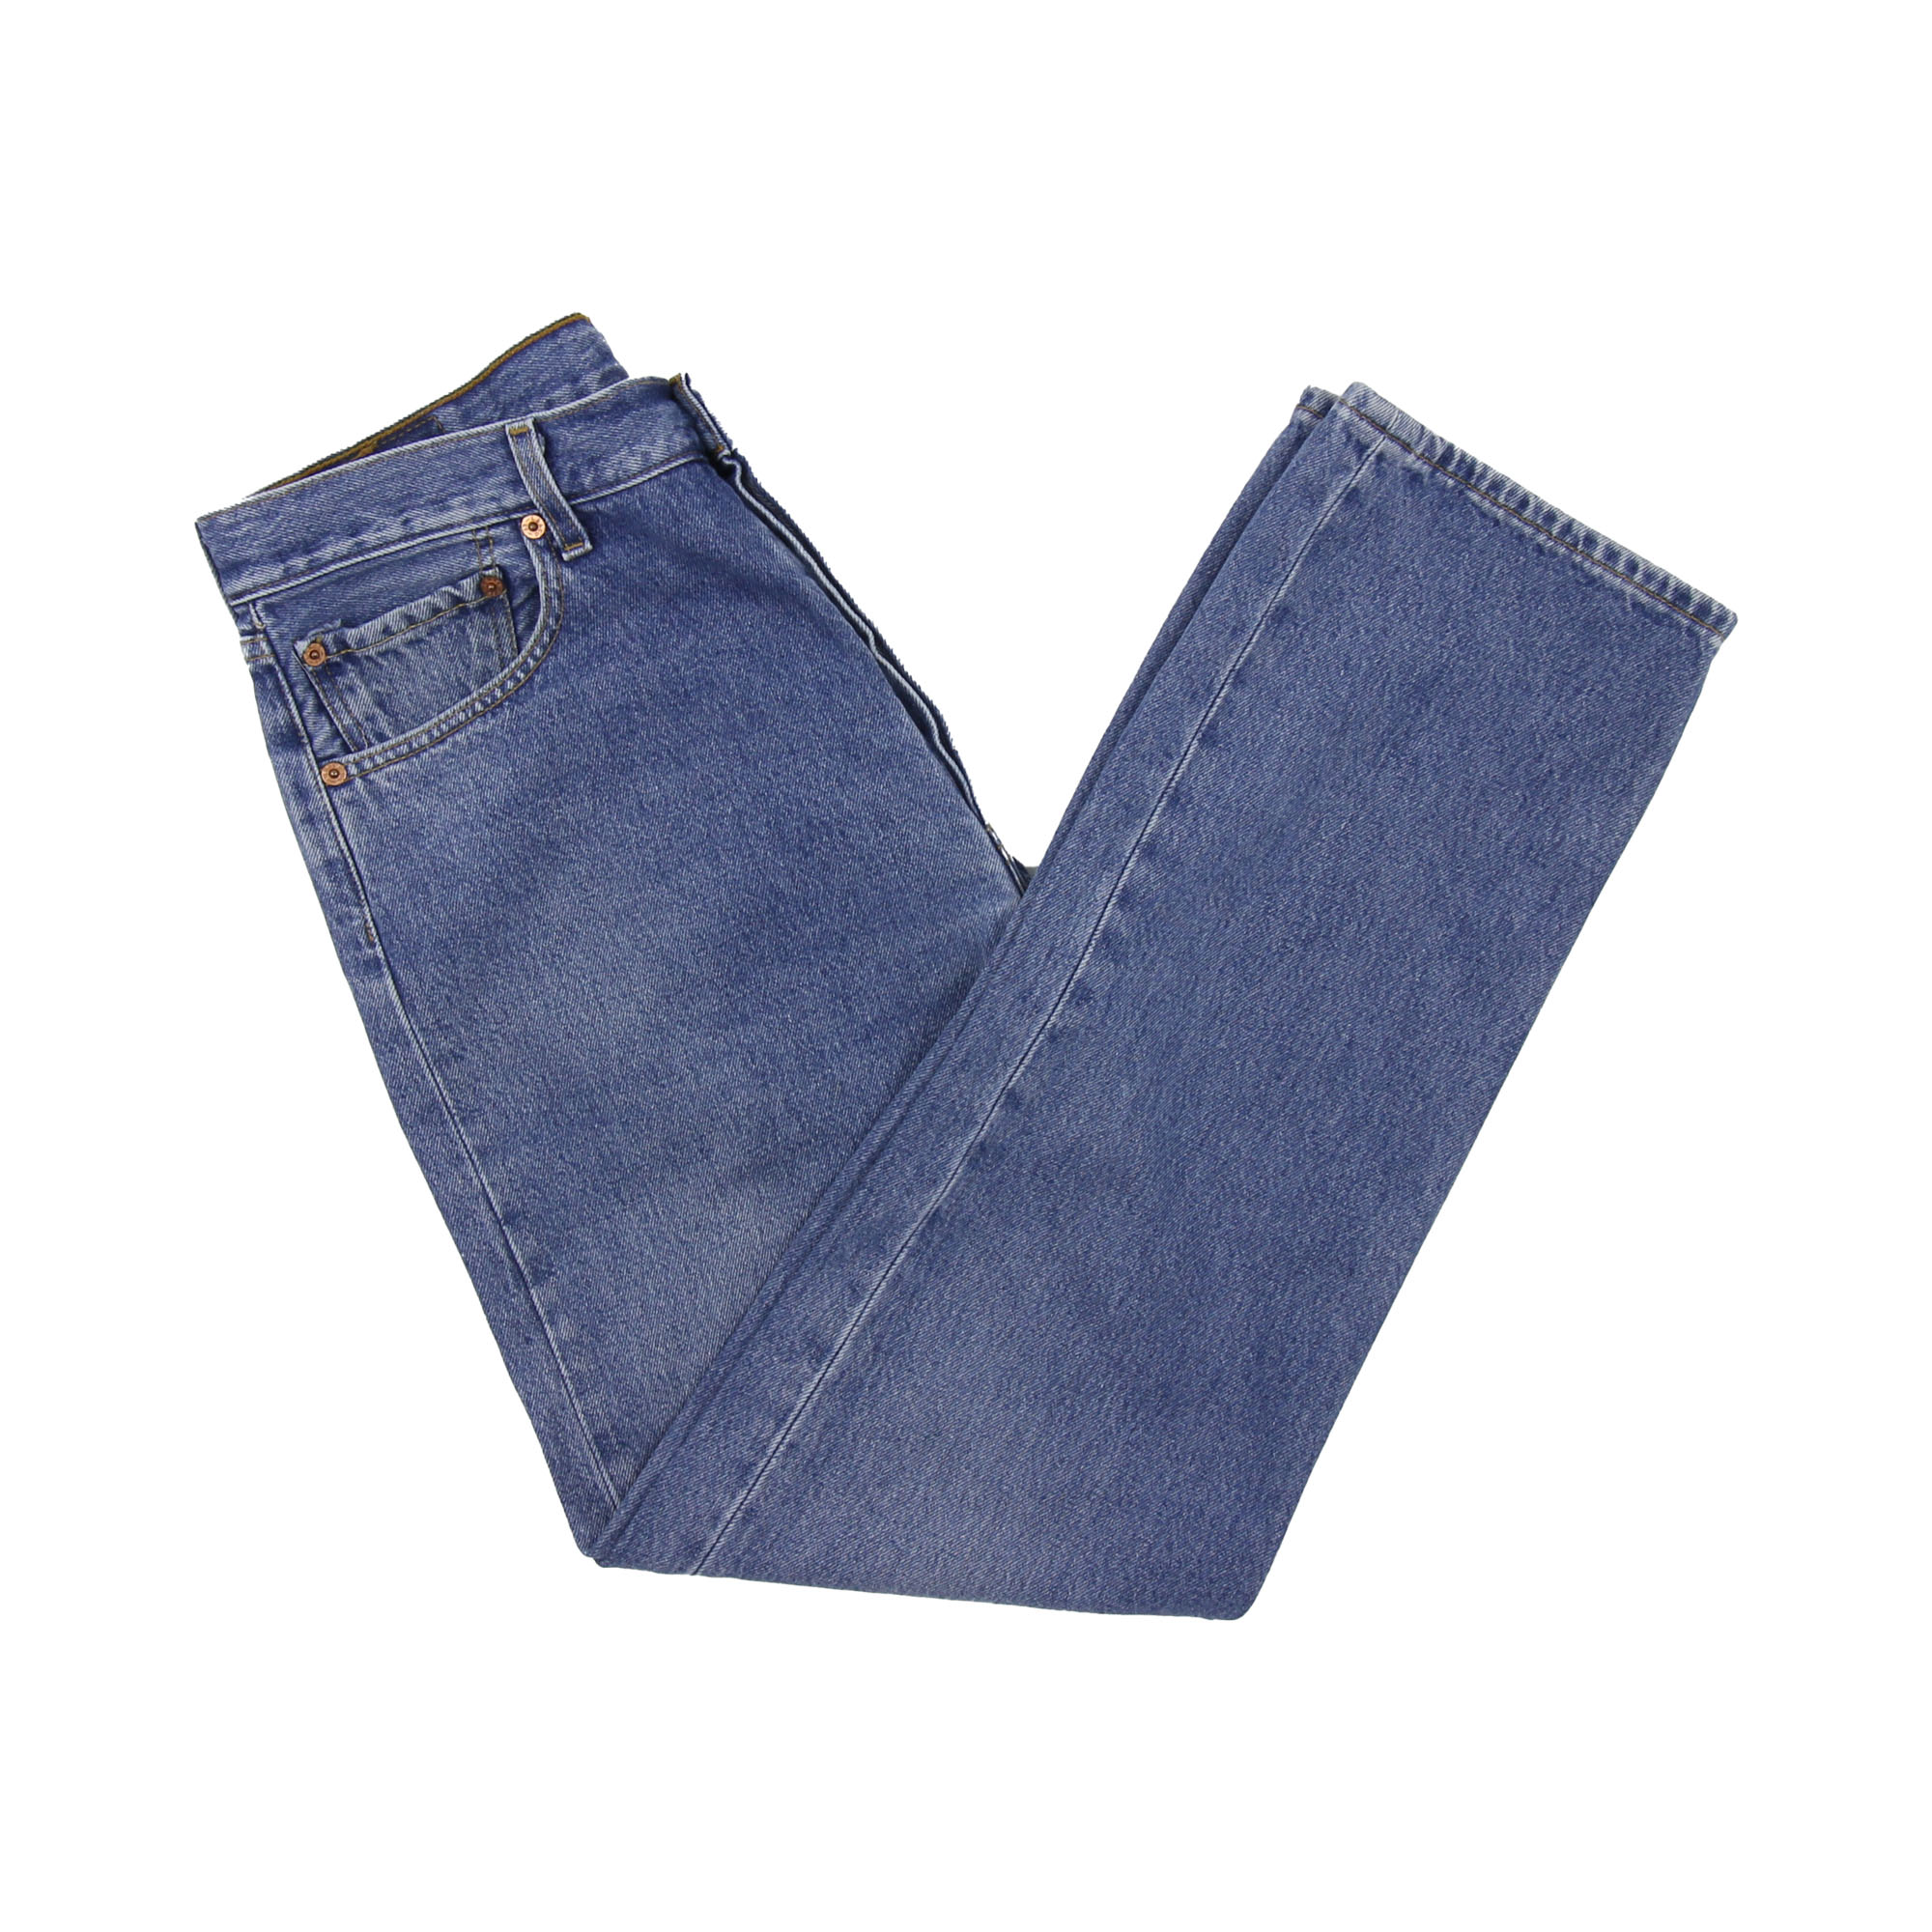 Levi's 501 Vintage Jeans -  W34 L32